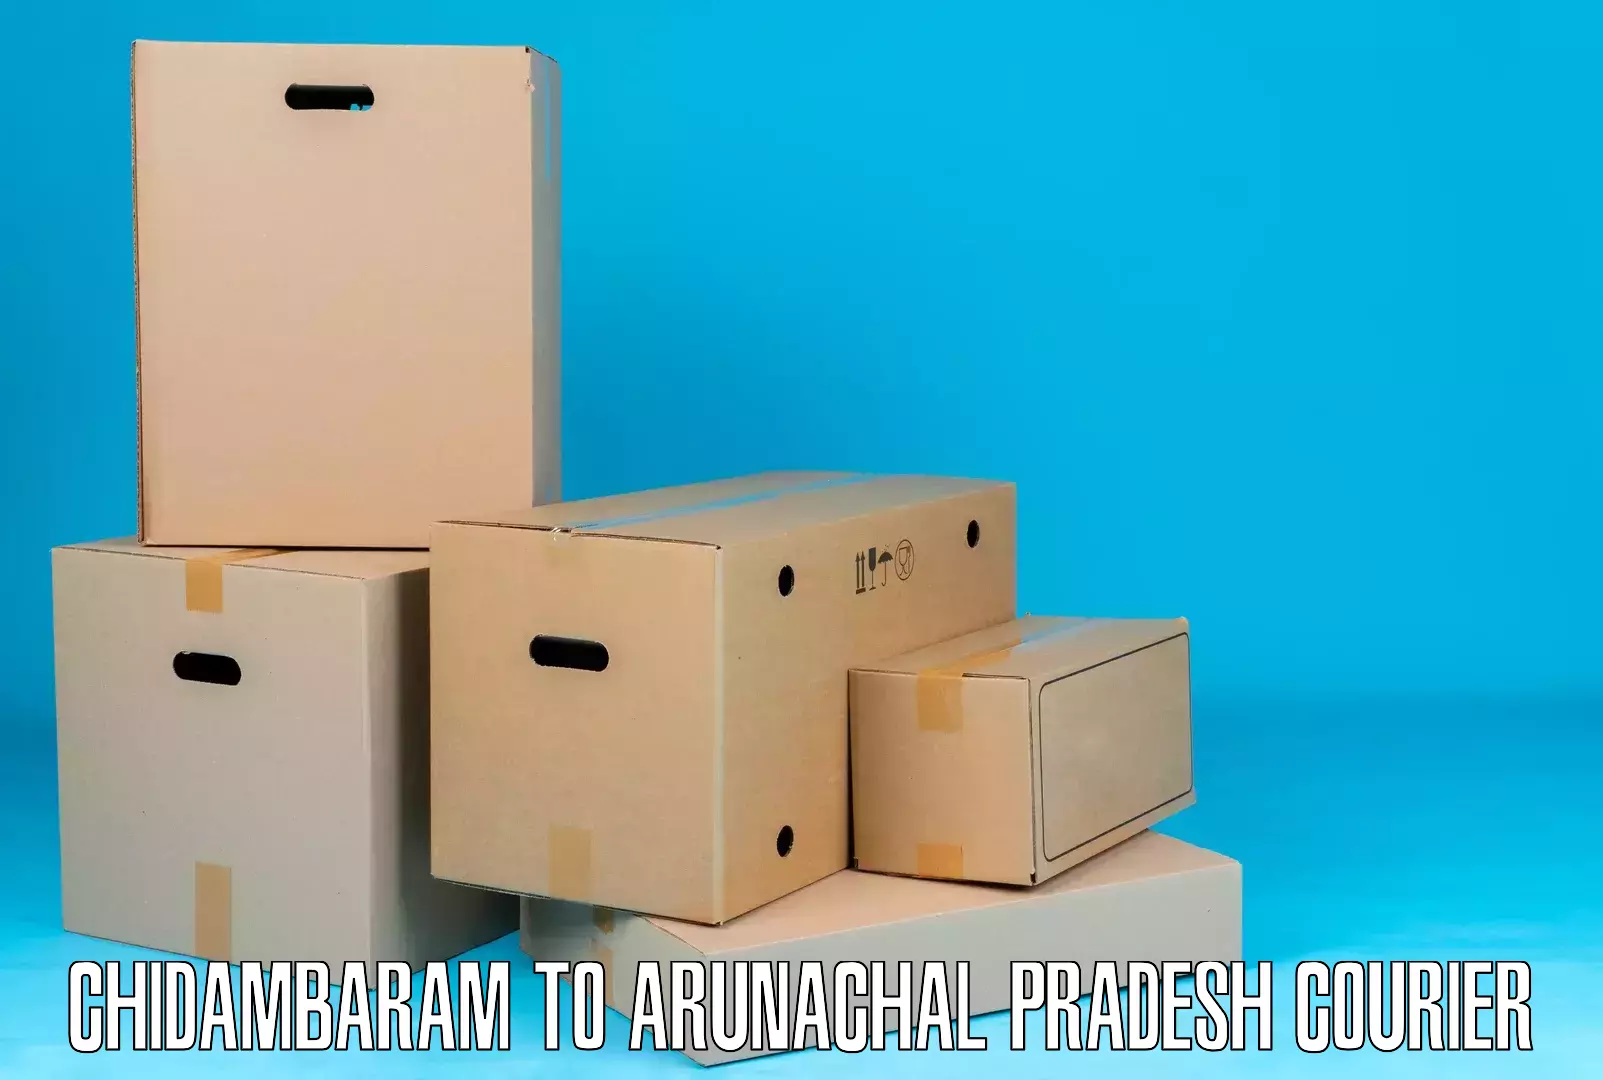 Small business couriers Chidambaram to Arunachal Pradesh